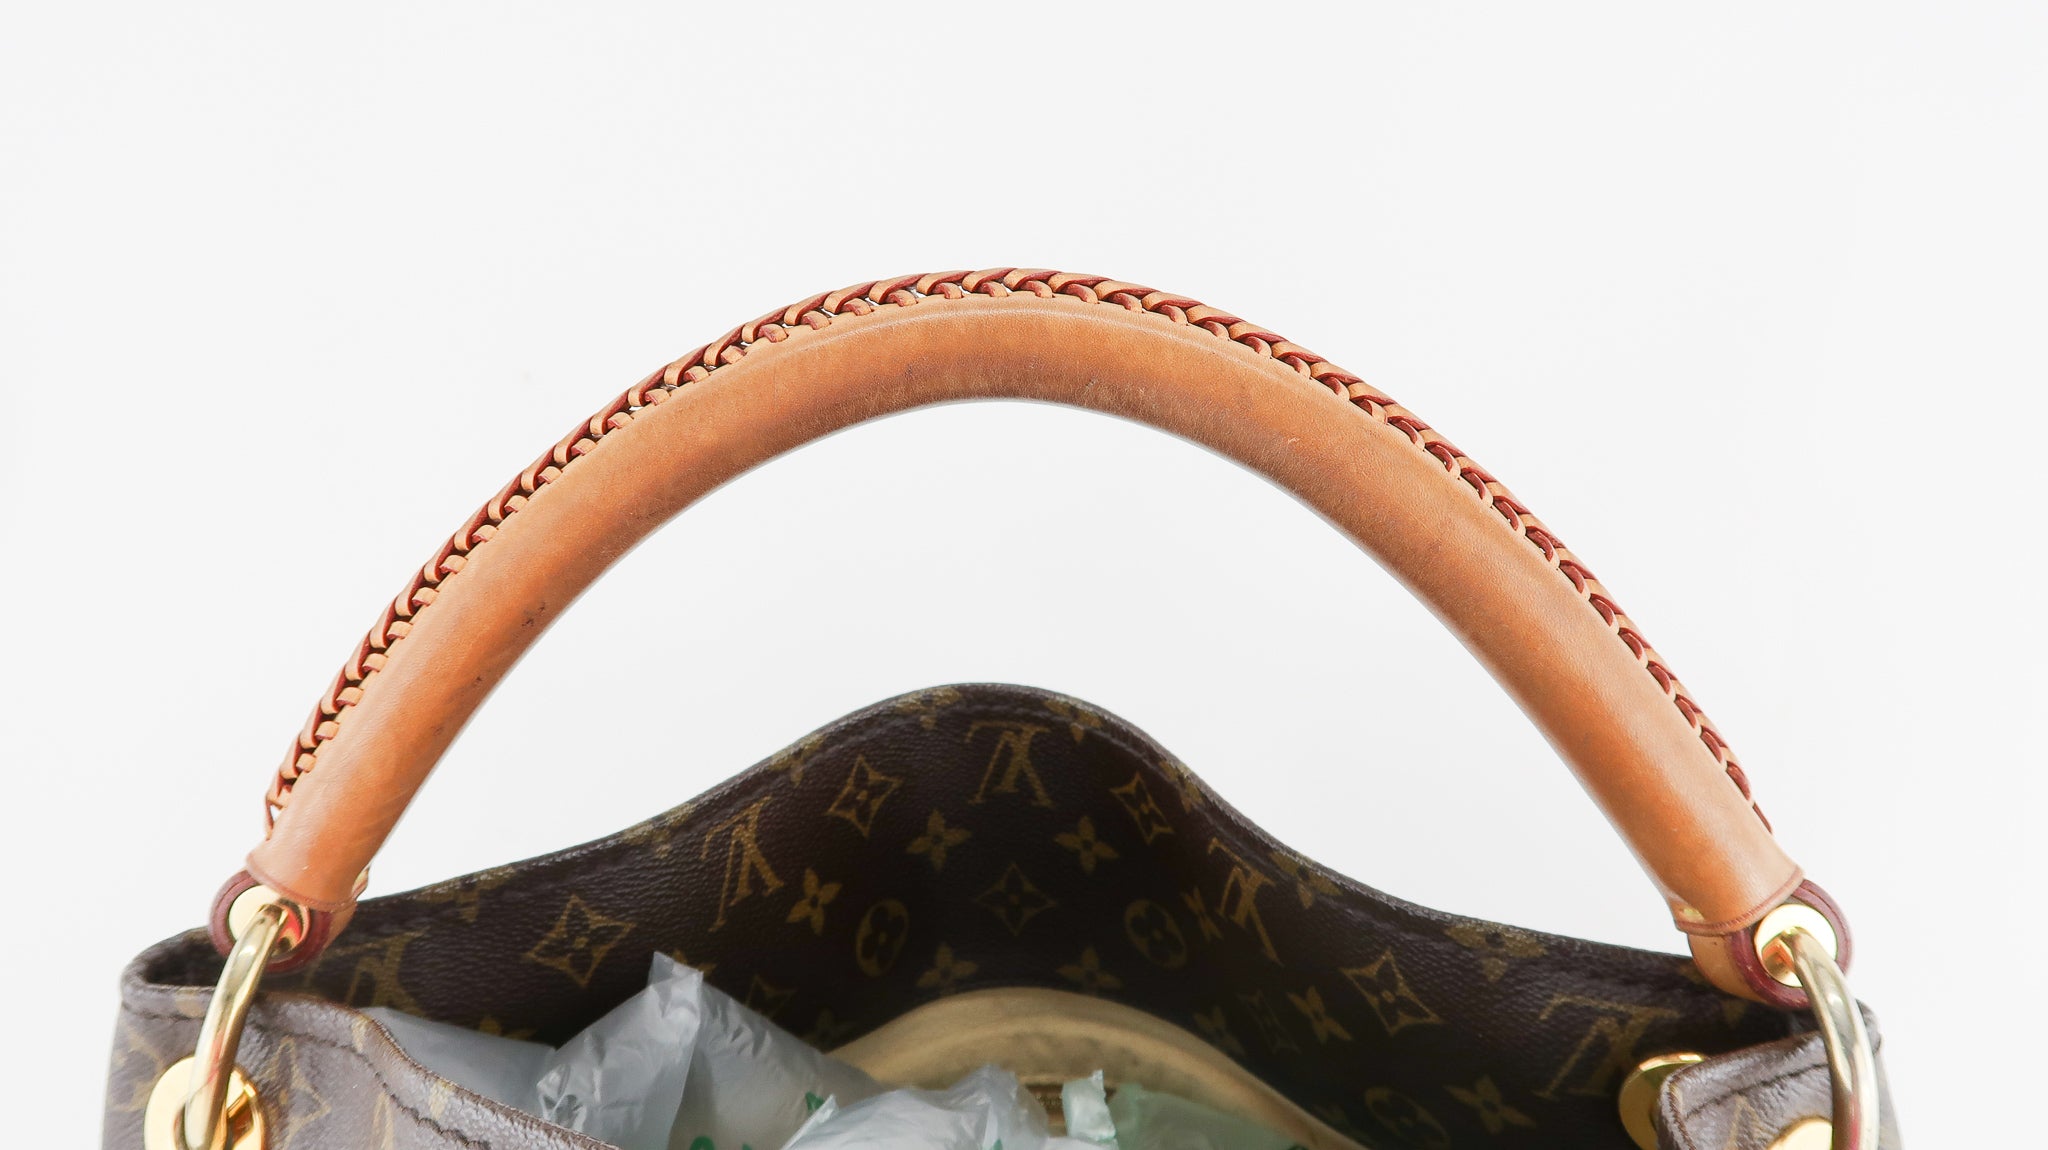 Louis Vuitton Artsy MM Brown Monogram Canvas Hobo Shoulder Bag